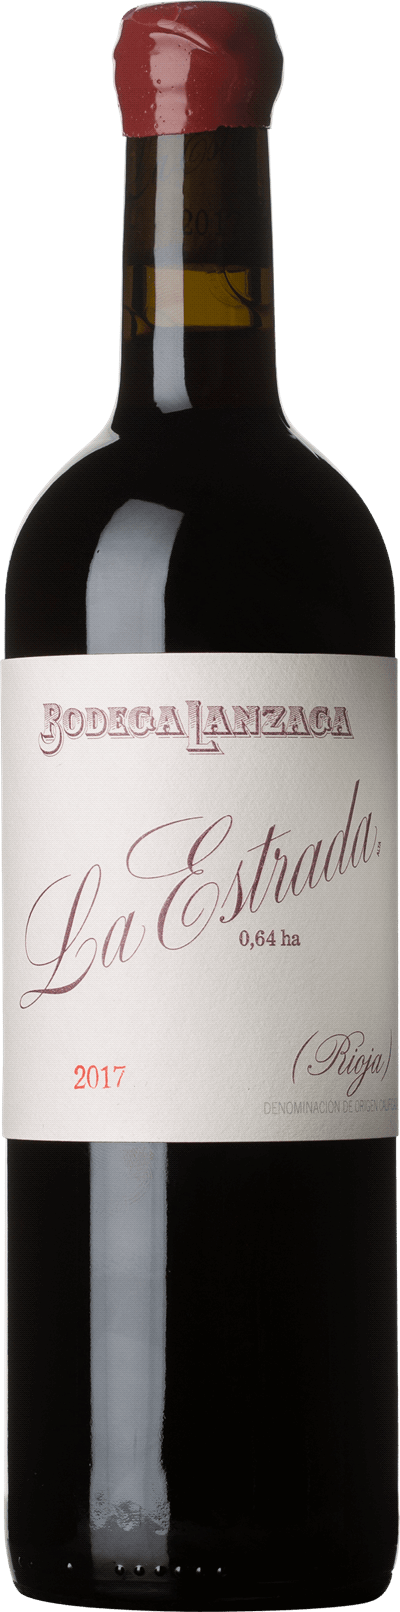 Bodega Lanzaga "La Estrada" Rioja 2017